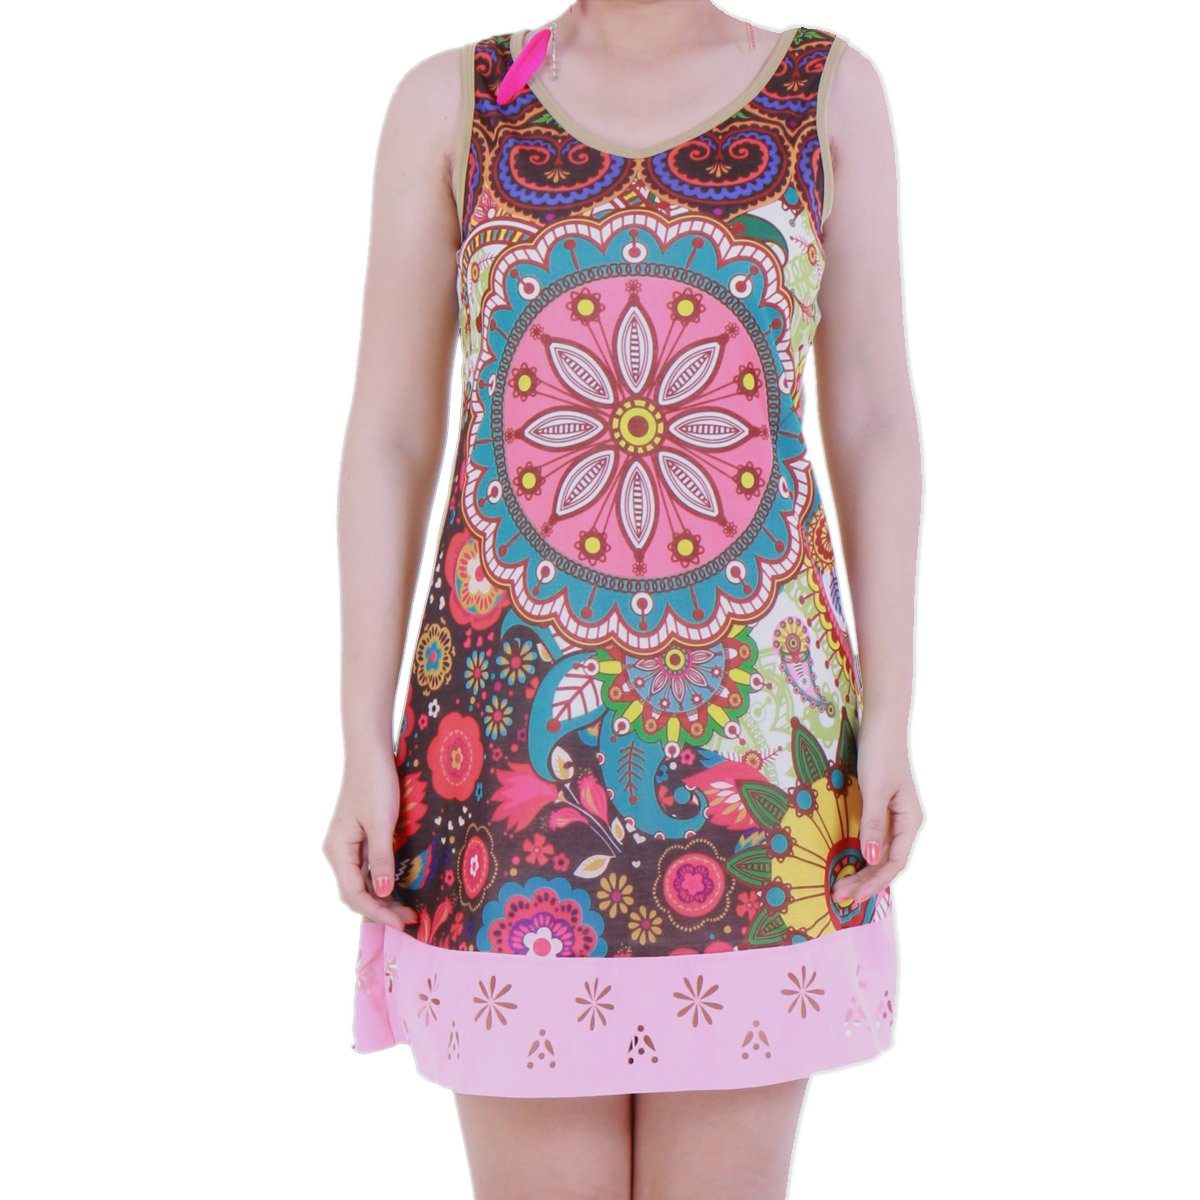 PANASIAM Tunikakleid Sommerkleid 'Underground' farbenfrohe Tunika aus Baumwolle Tunikakleid auch für Schlagerparty 70er Party oder Festivals ein Hingucker